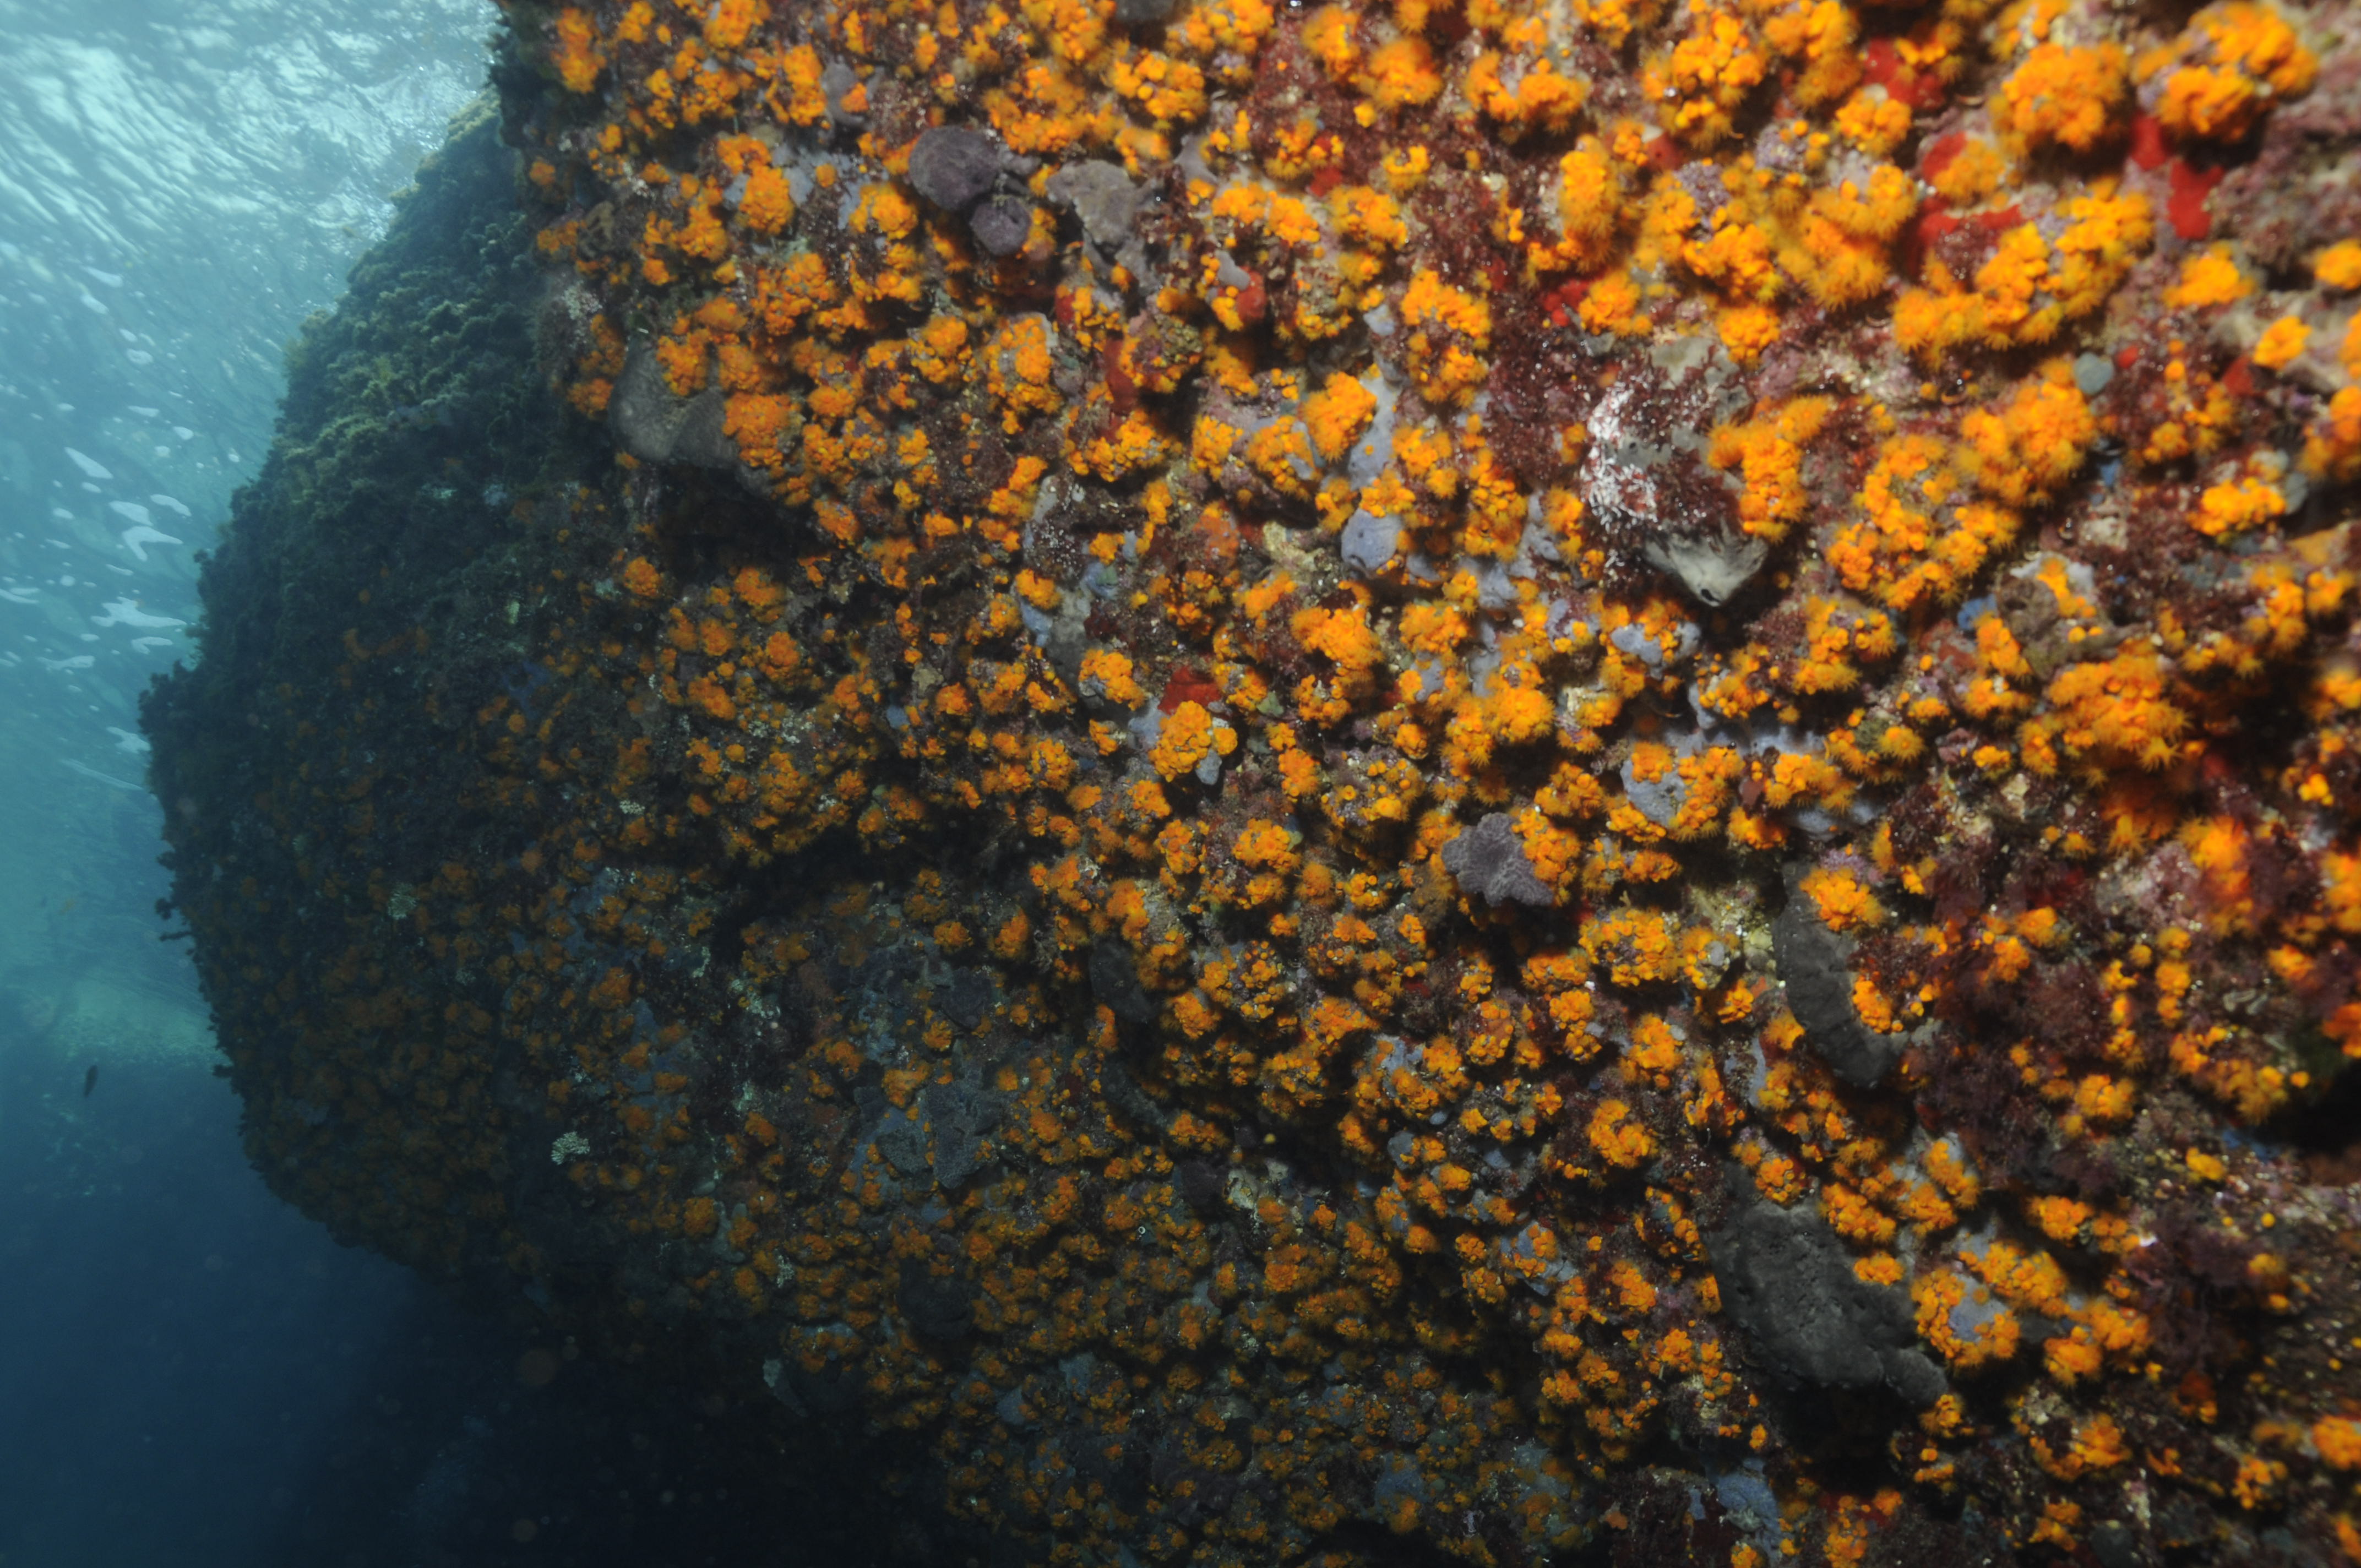 Astroides calycularis o coral anaranjado IV